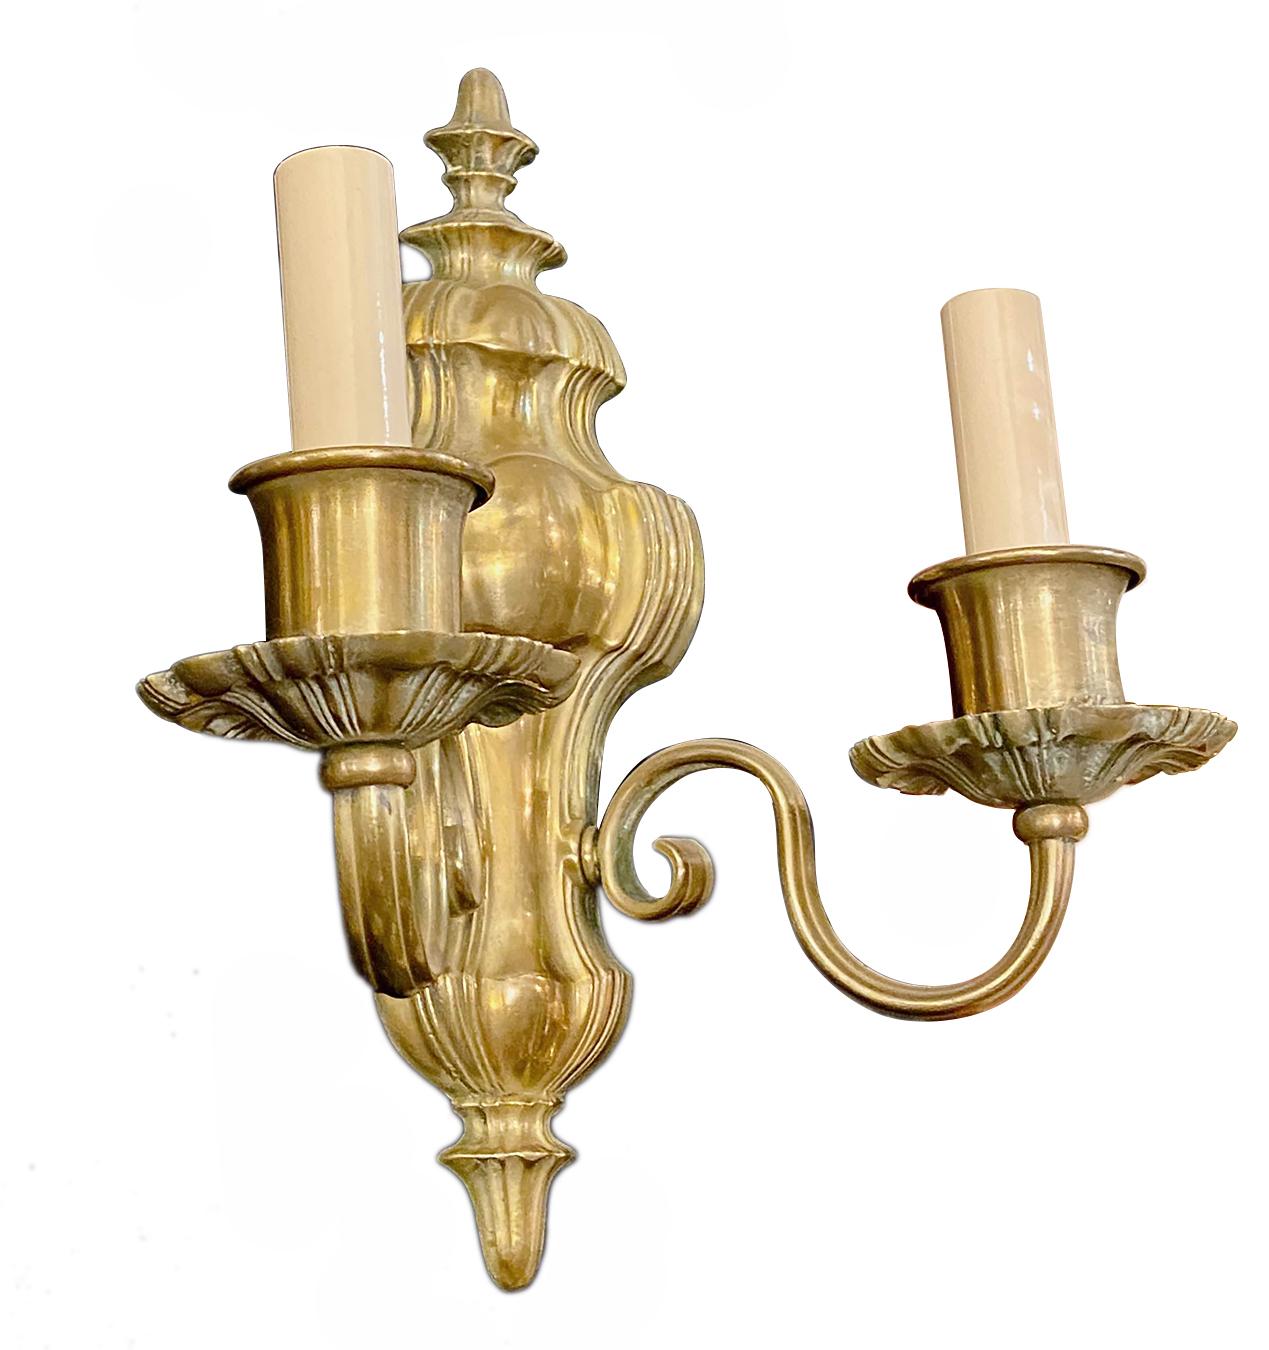 Ein Paar bronzene Caldwell-Leuchter im neoklassischen Stil aus den 1920er Jahren.

Abmessungen:
Höhe 12